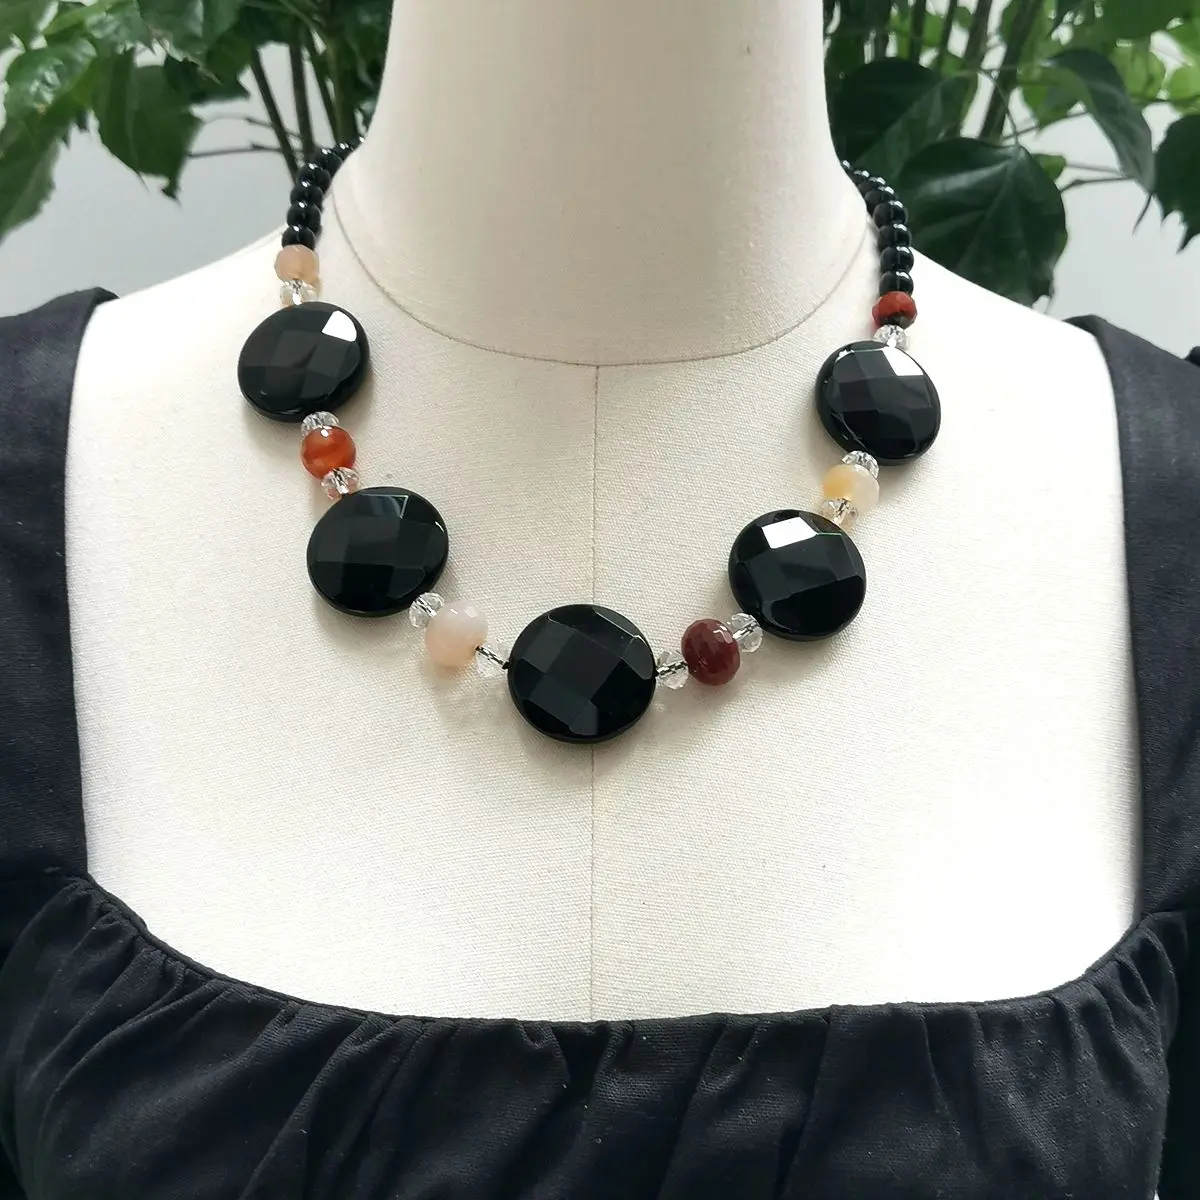 

Ожерелье Lii Ji из натурального камня Агата и оникса, ожерелье 55 см, Черное женское ожерелье, ювелирные изделия, Распродажа со склада